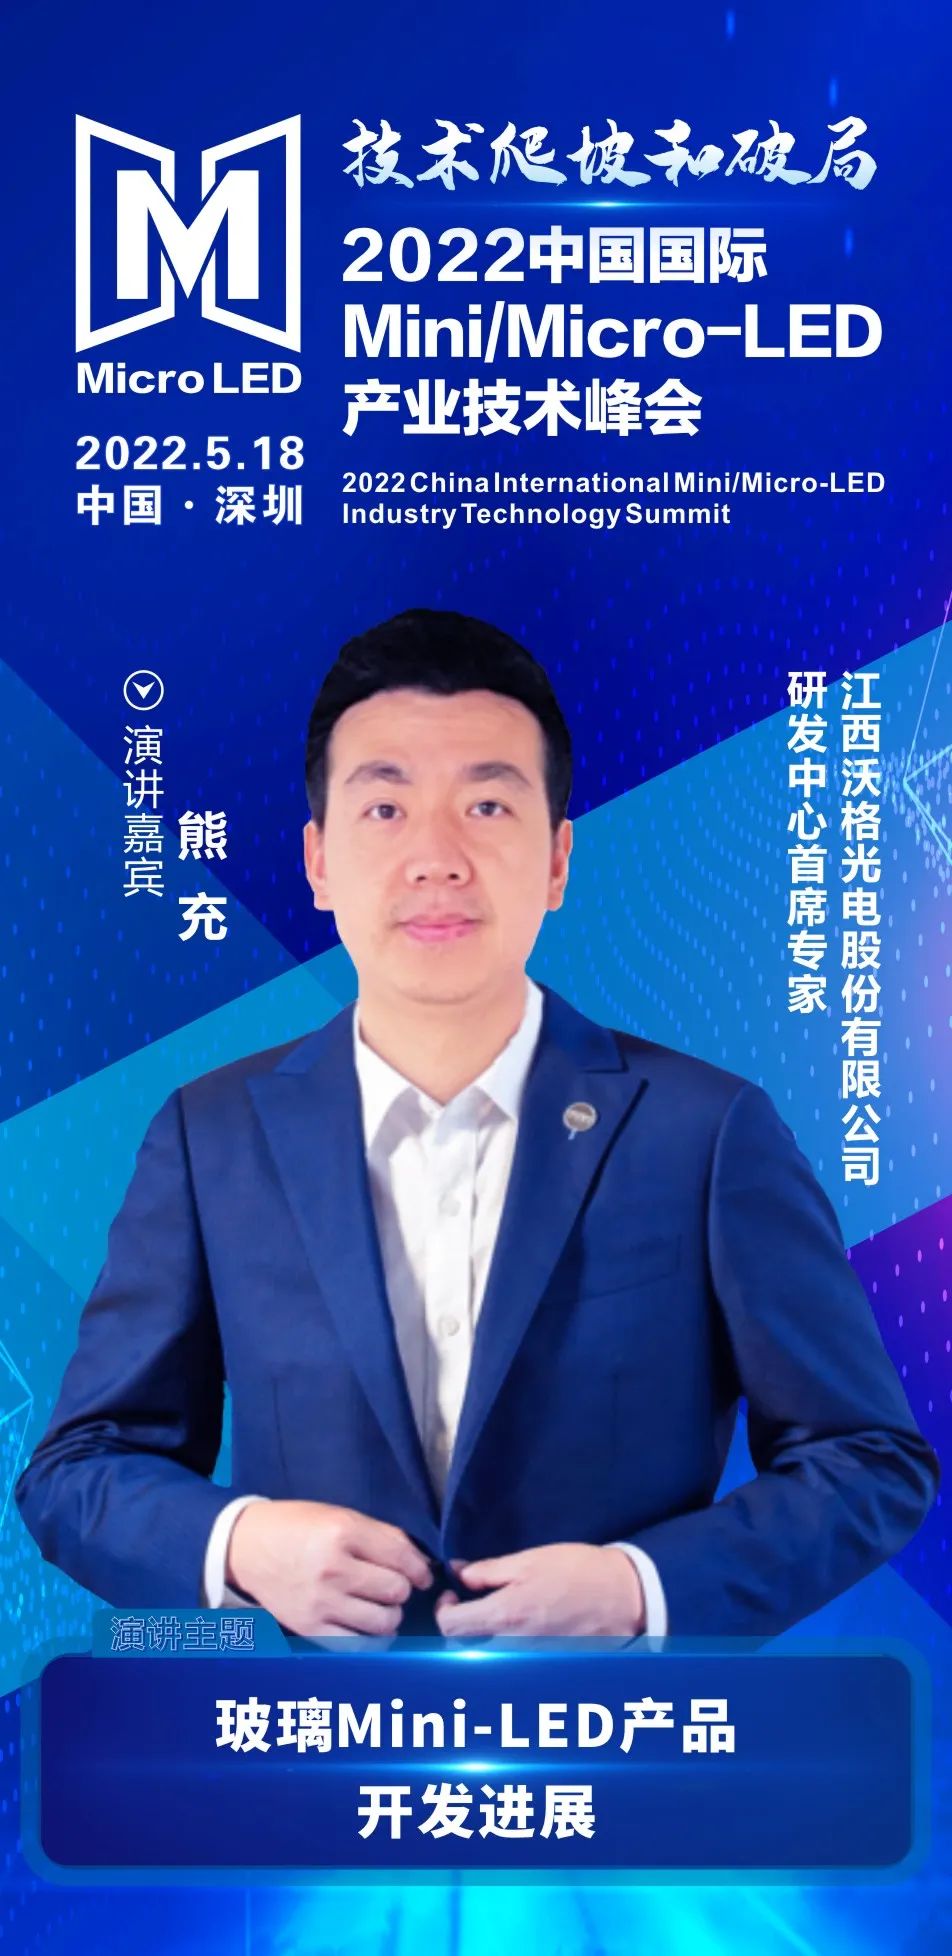 技术爬坡和破局 | 江西沃格光电研发中心首席专家熊充确认出席2022中国国际Mini/Micro-LED产业技术峰会